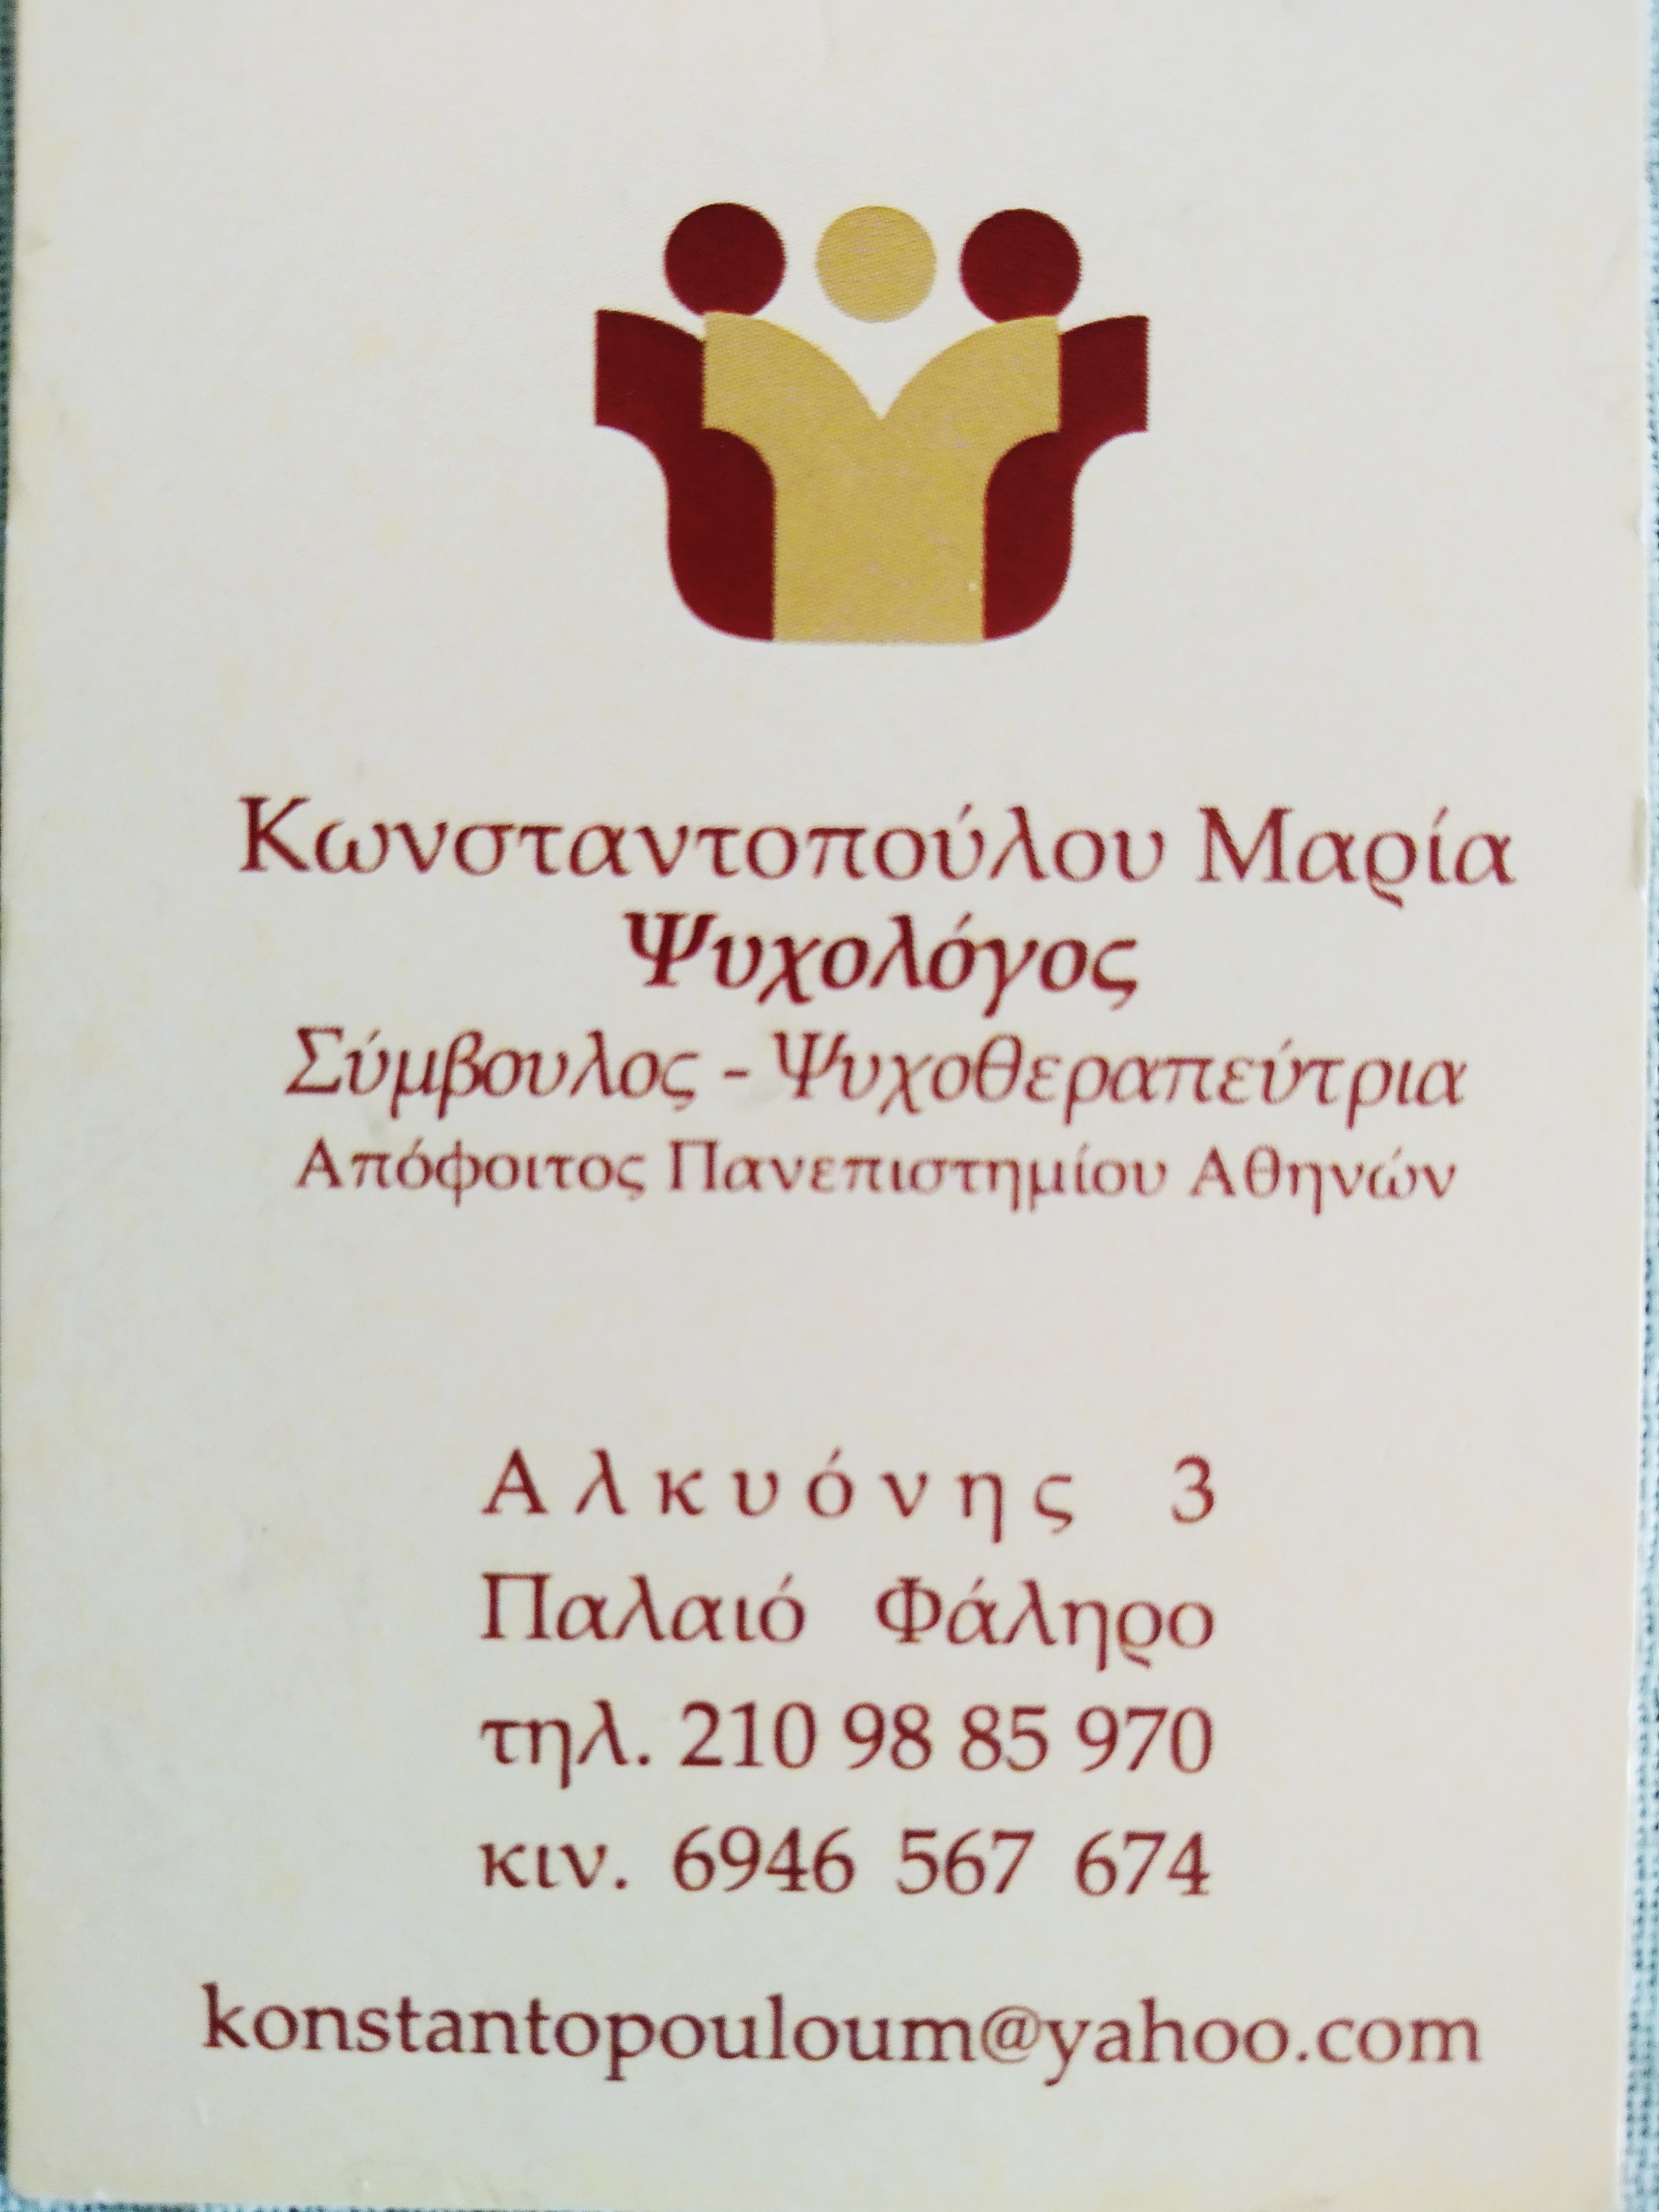 Κωνσταντοπούλου Μαρία Ψυχολόγος Σύμβουλος Ψυχοθεραπεύτρια logo